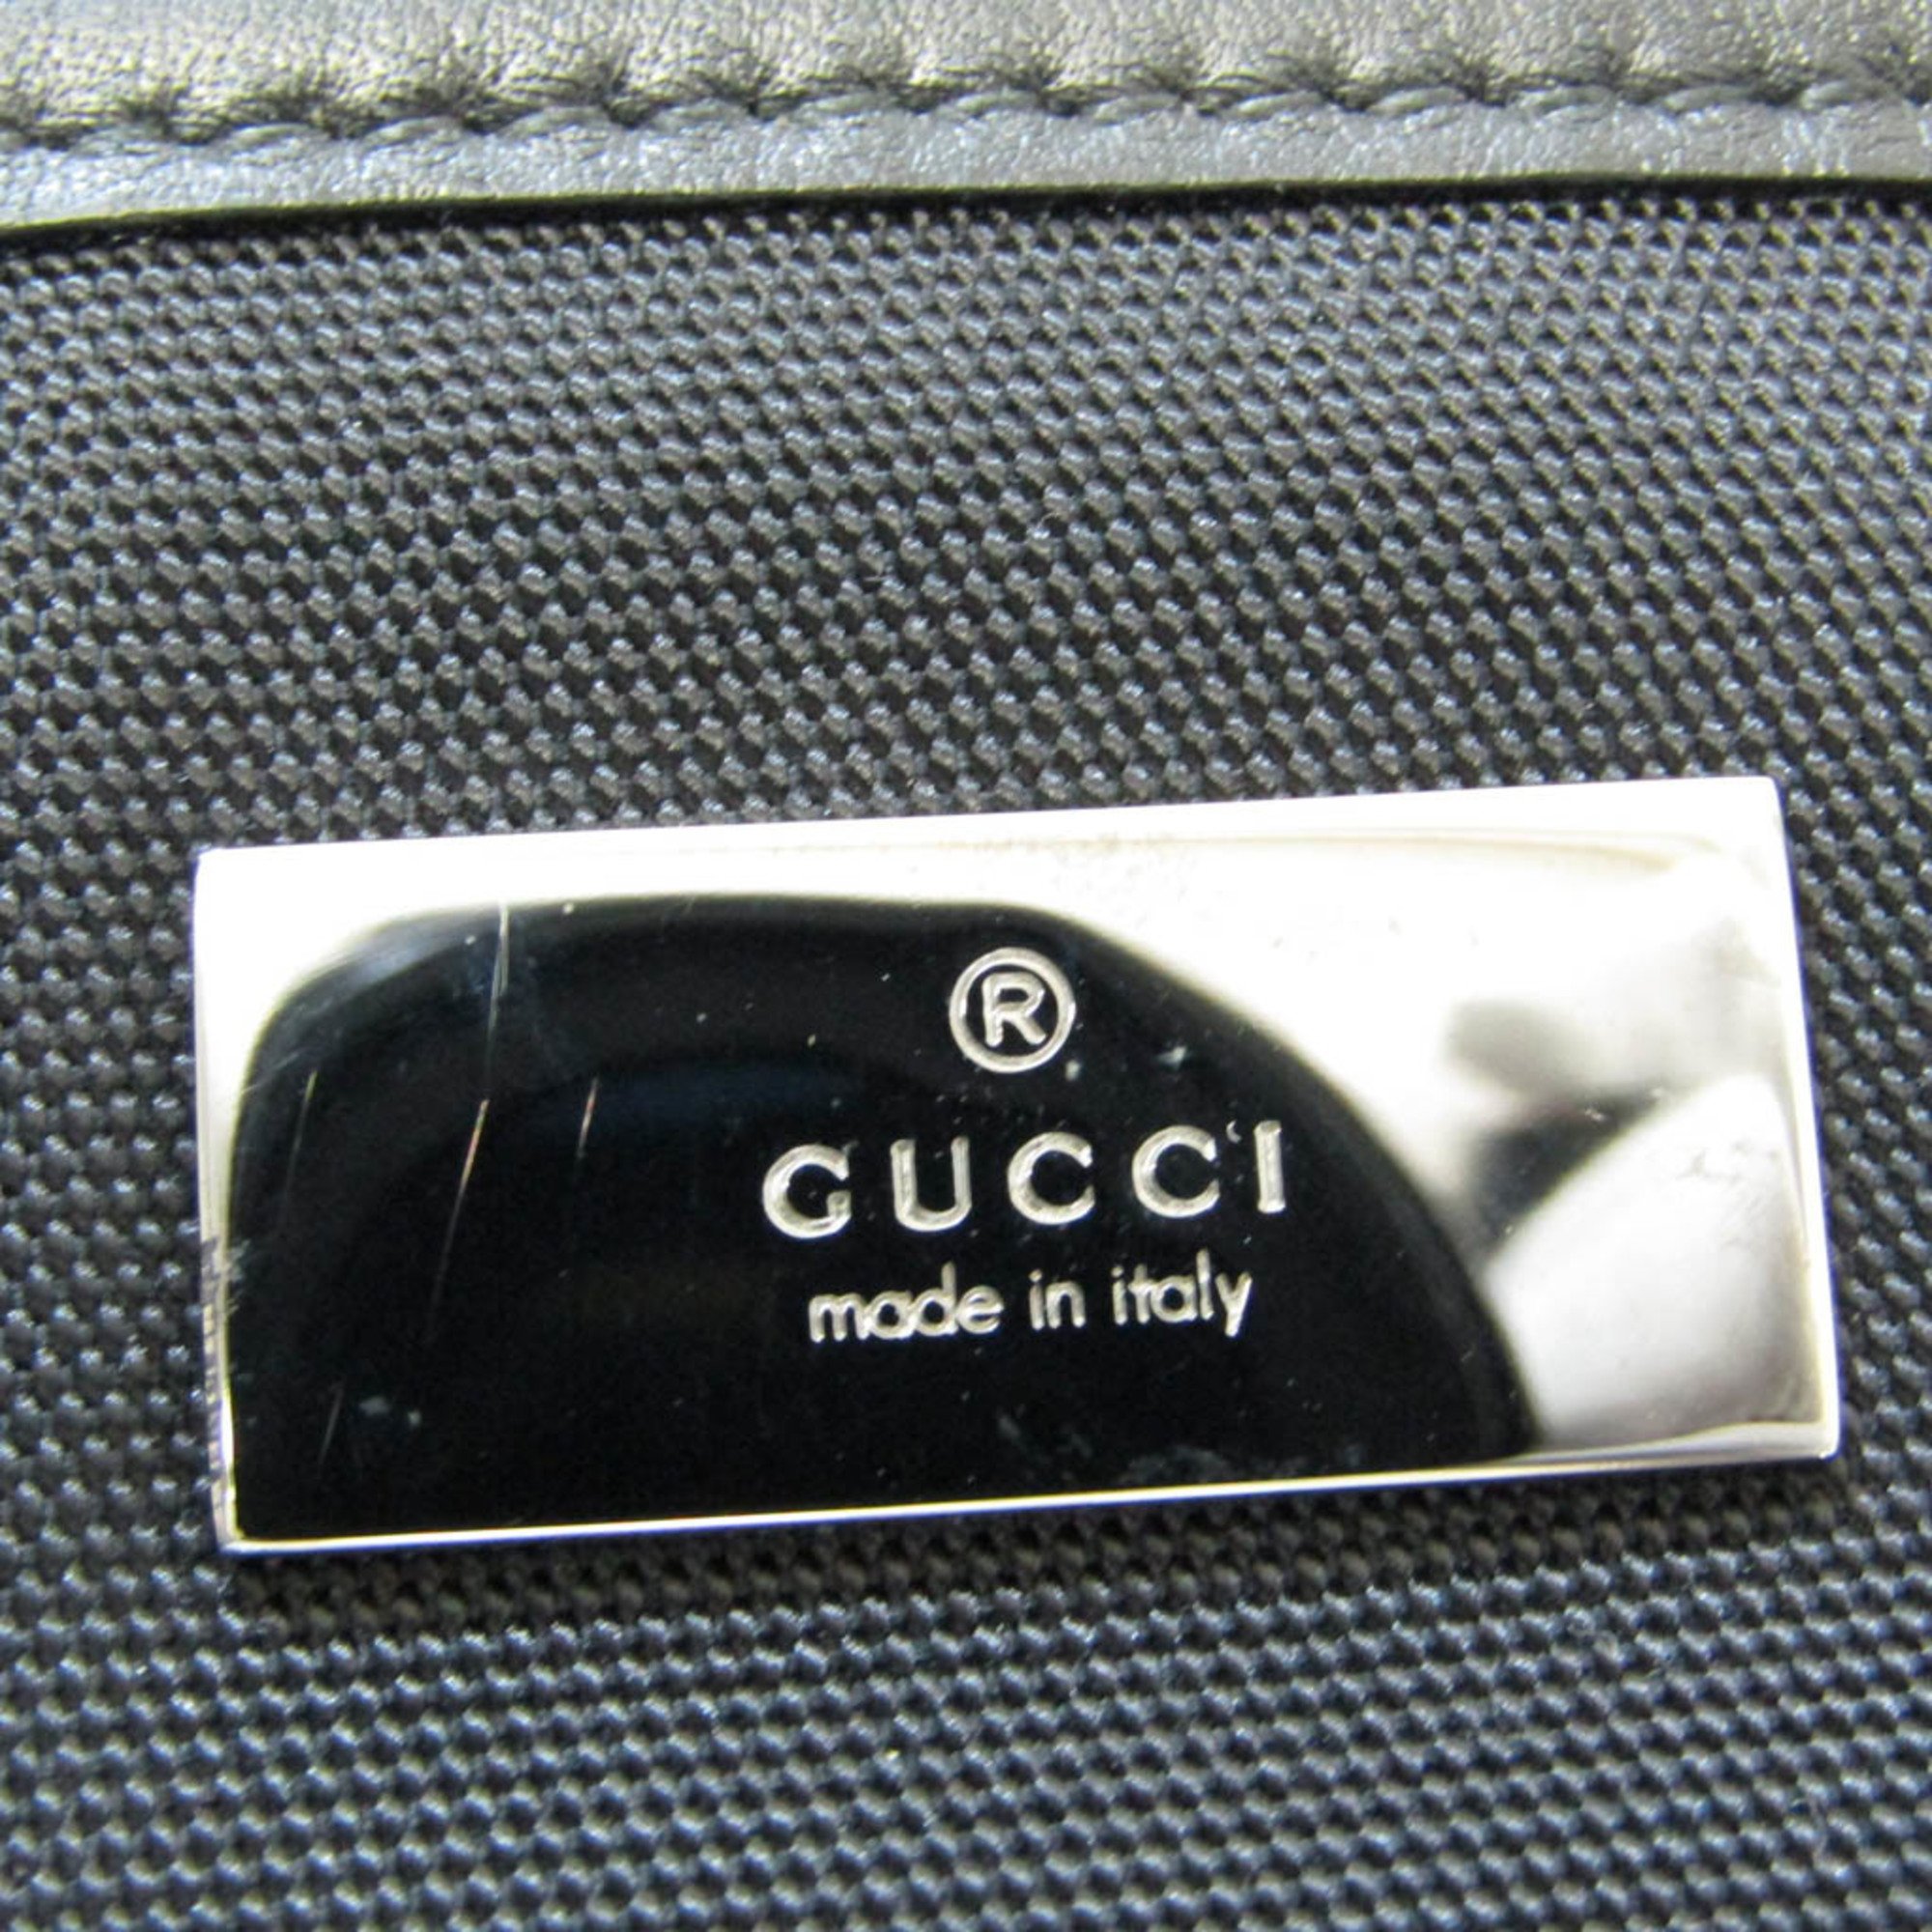 Gucci Guccissima 161770 Men,Women Leather,Nylon Canvas Tote Bag Black